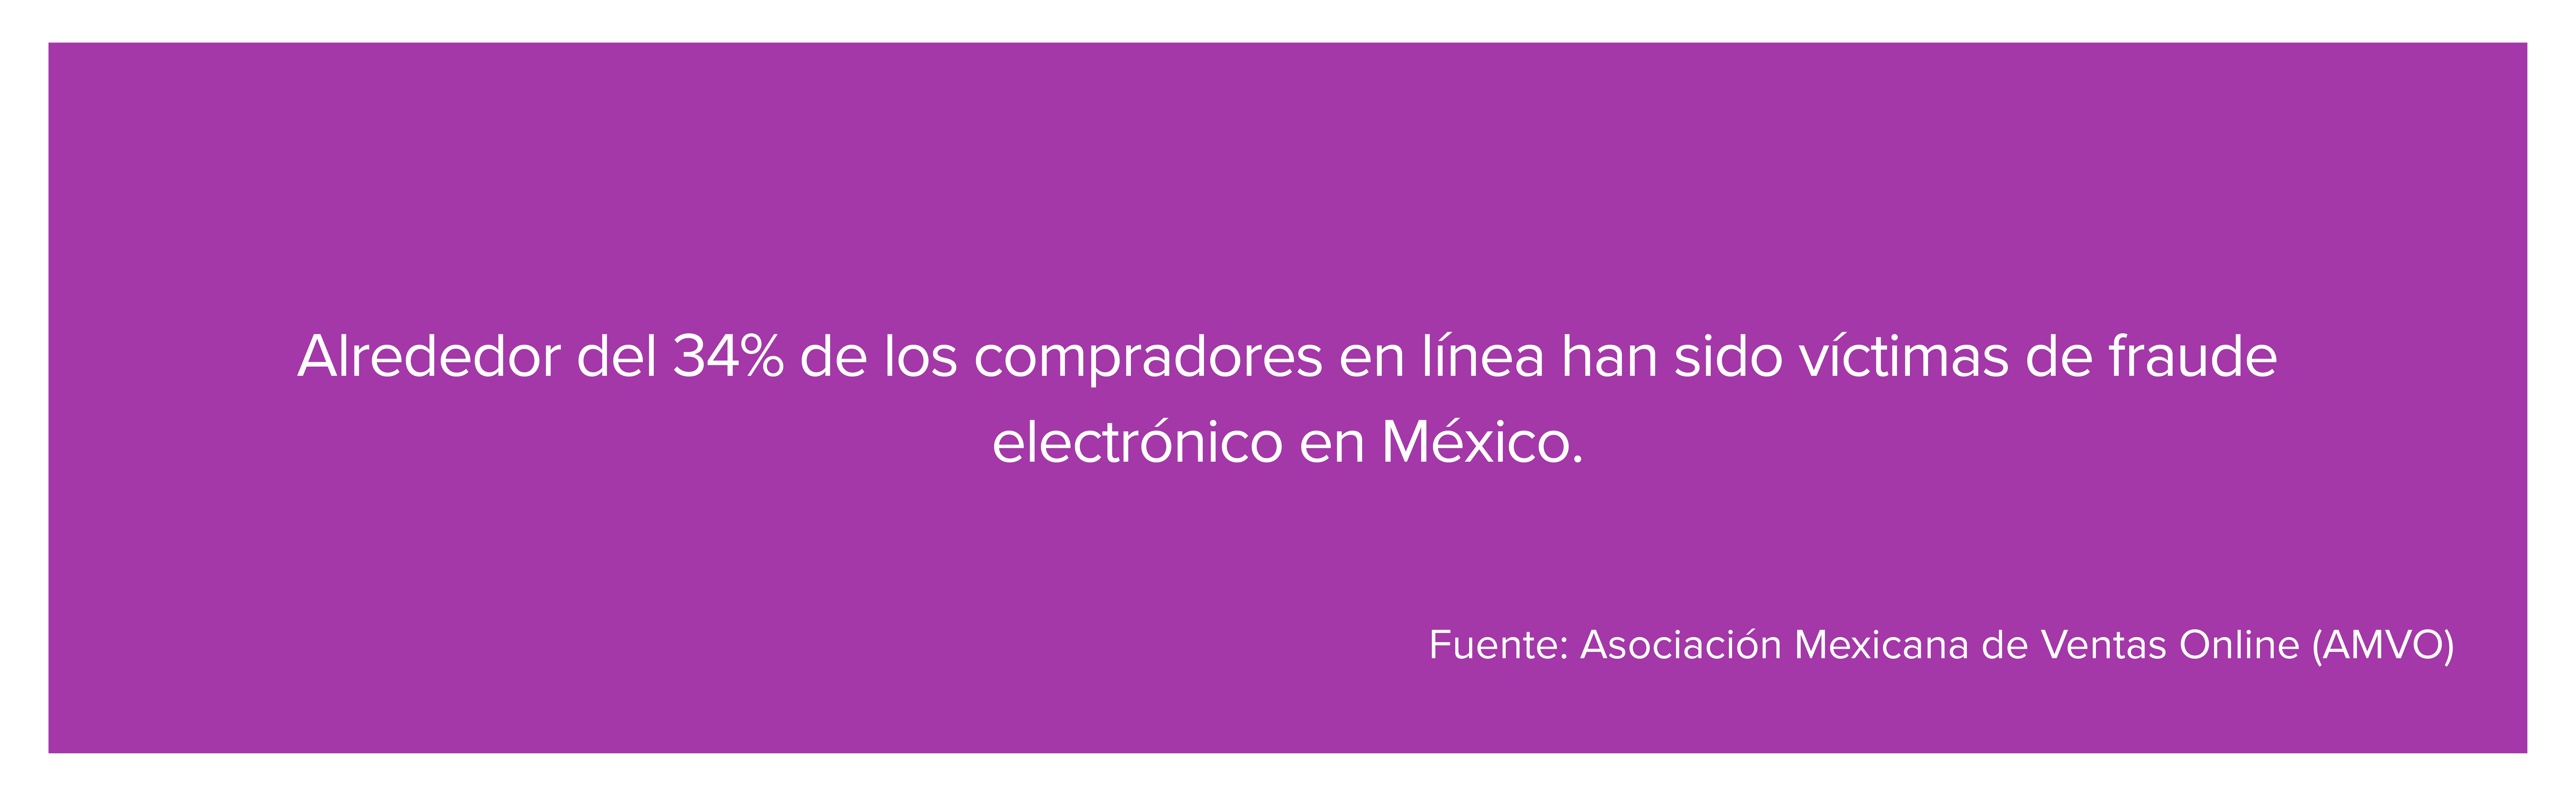 Alrededor del 34% de los compradores en línea han sido víctimas de fraude electrónico en México. 
